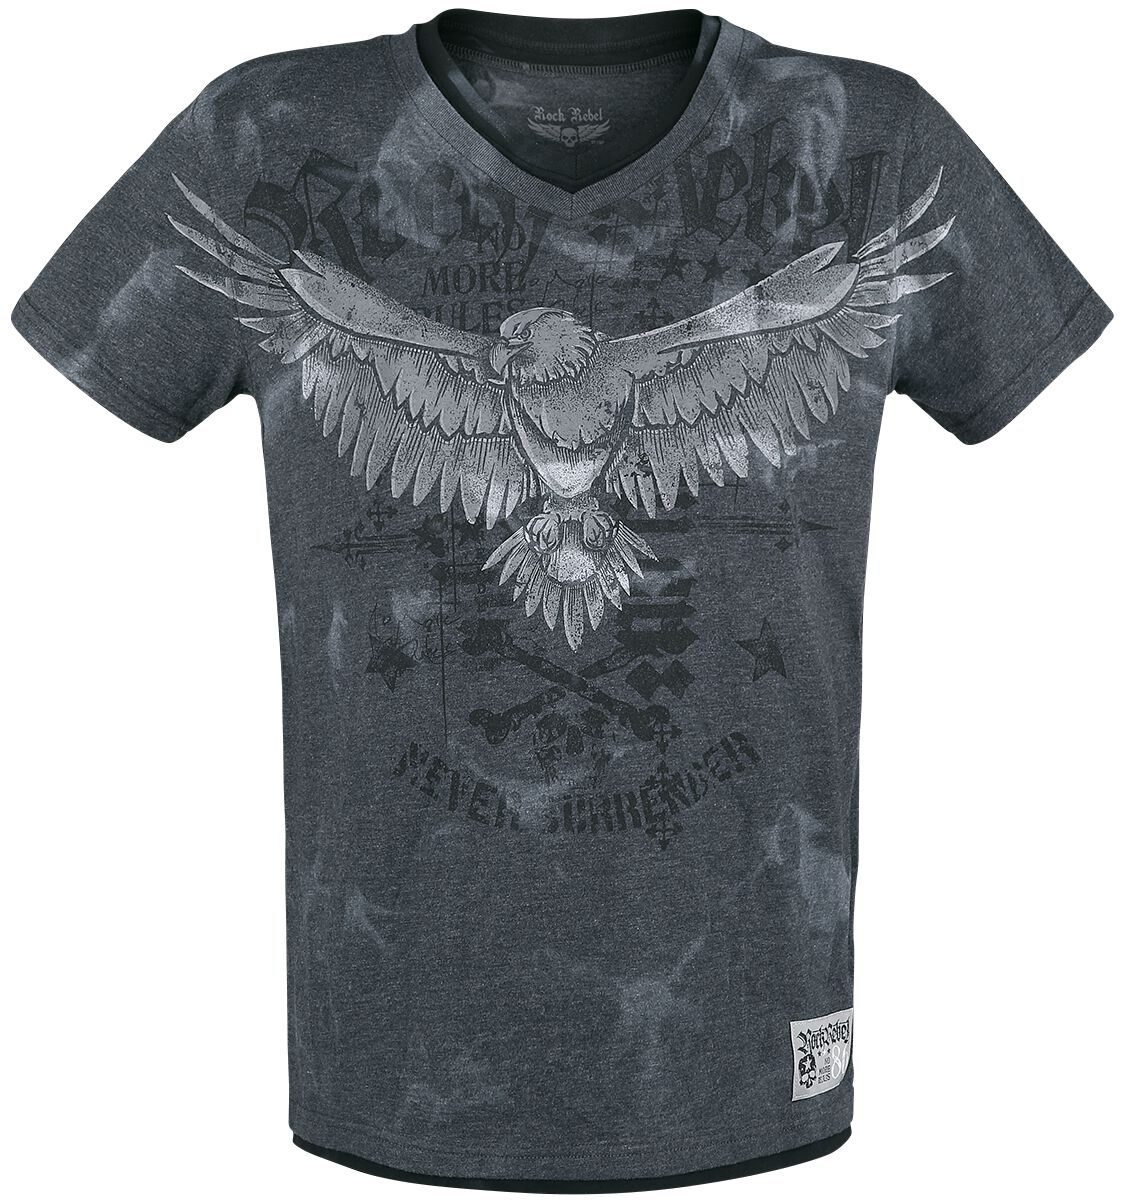 Rock Rebel by EMP - Rock T-Shirt - T-Shirt mit Print und V-Ausschnitt - S bis XXL - für Männer - Größe L - grau